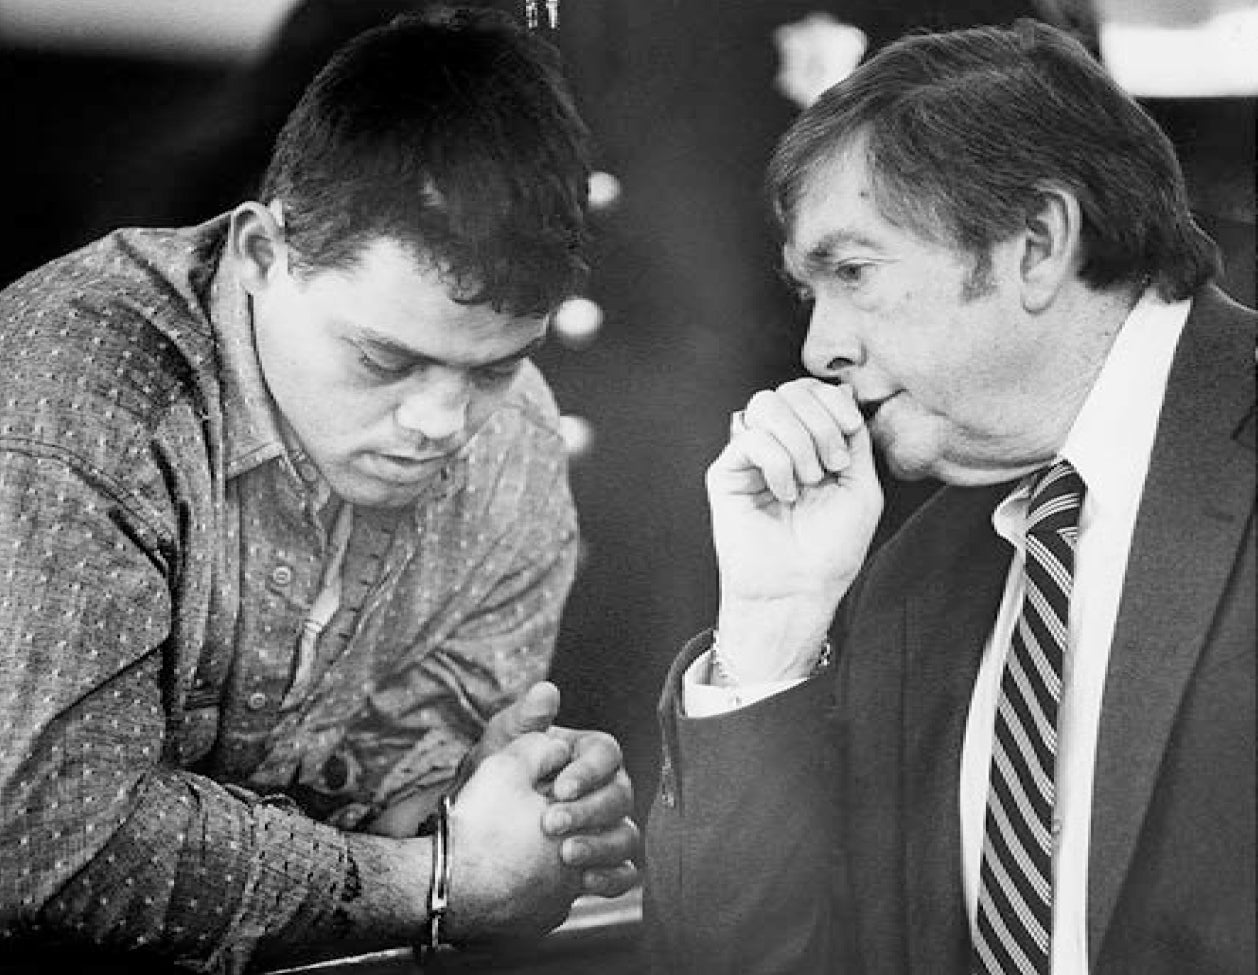 Anthony DeGrazia, acusado de atacar a prostitutas, con su primer abogado, Edward Harrington, en el Tribunal Superior de New Bedford el 11 de mayo de 1989 (foto del Standard-Times por Hank Seaman)